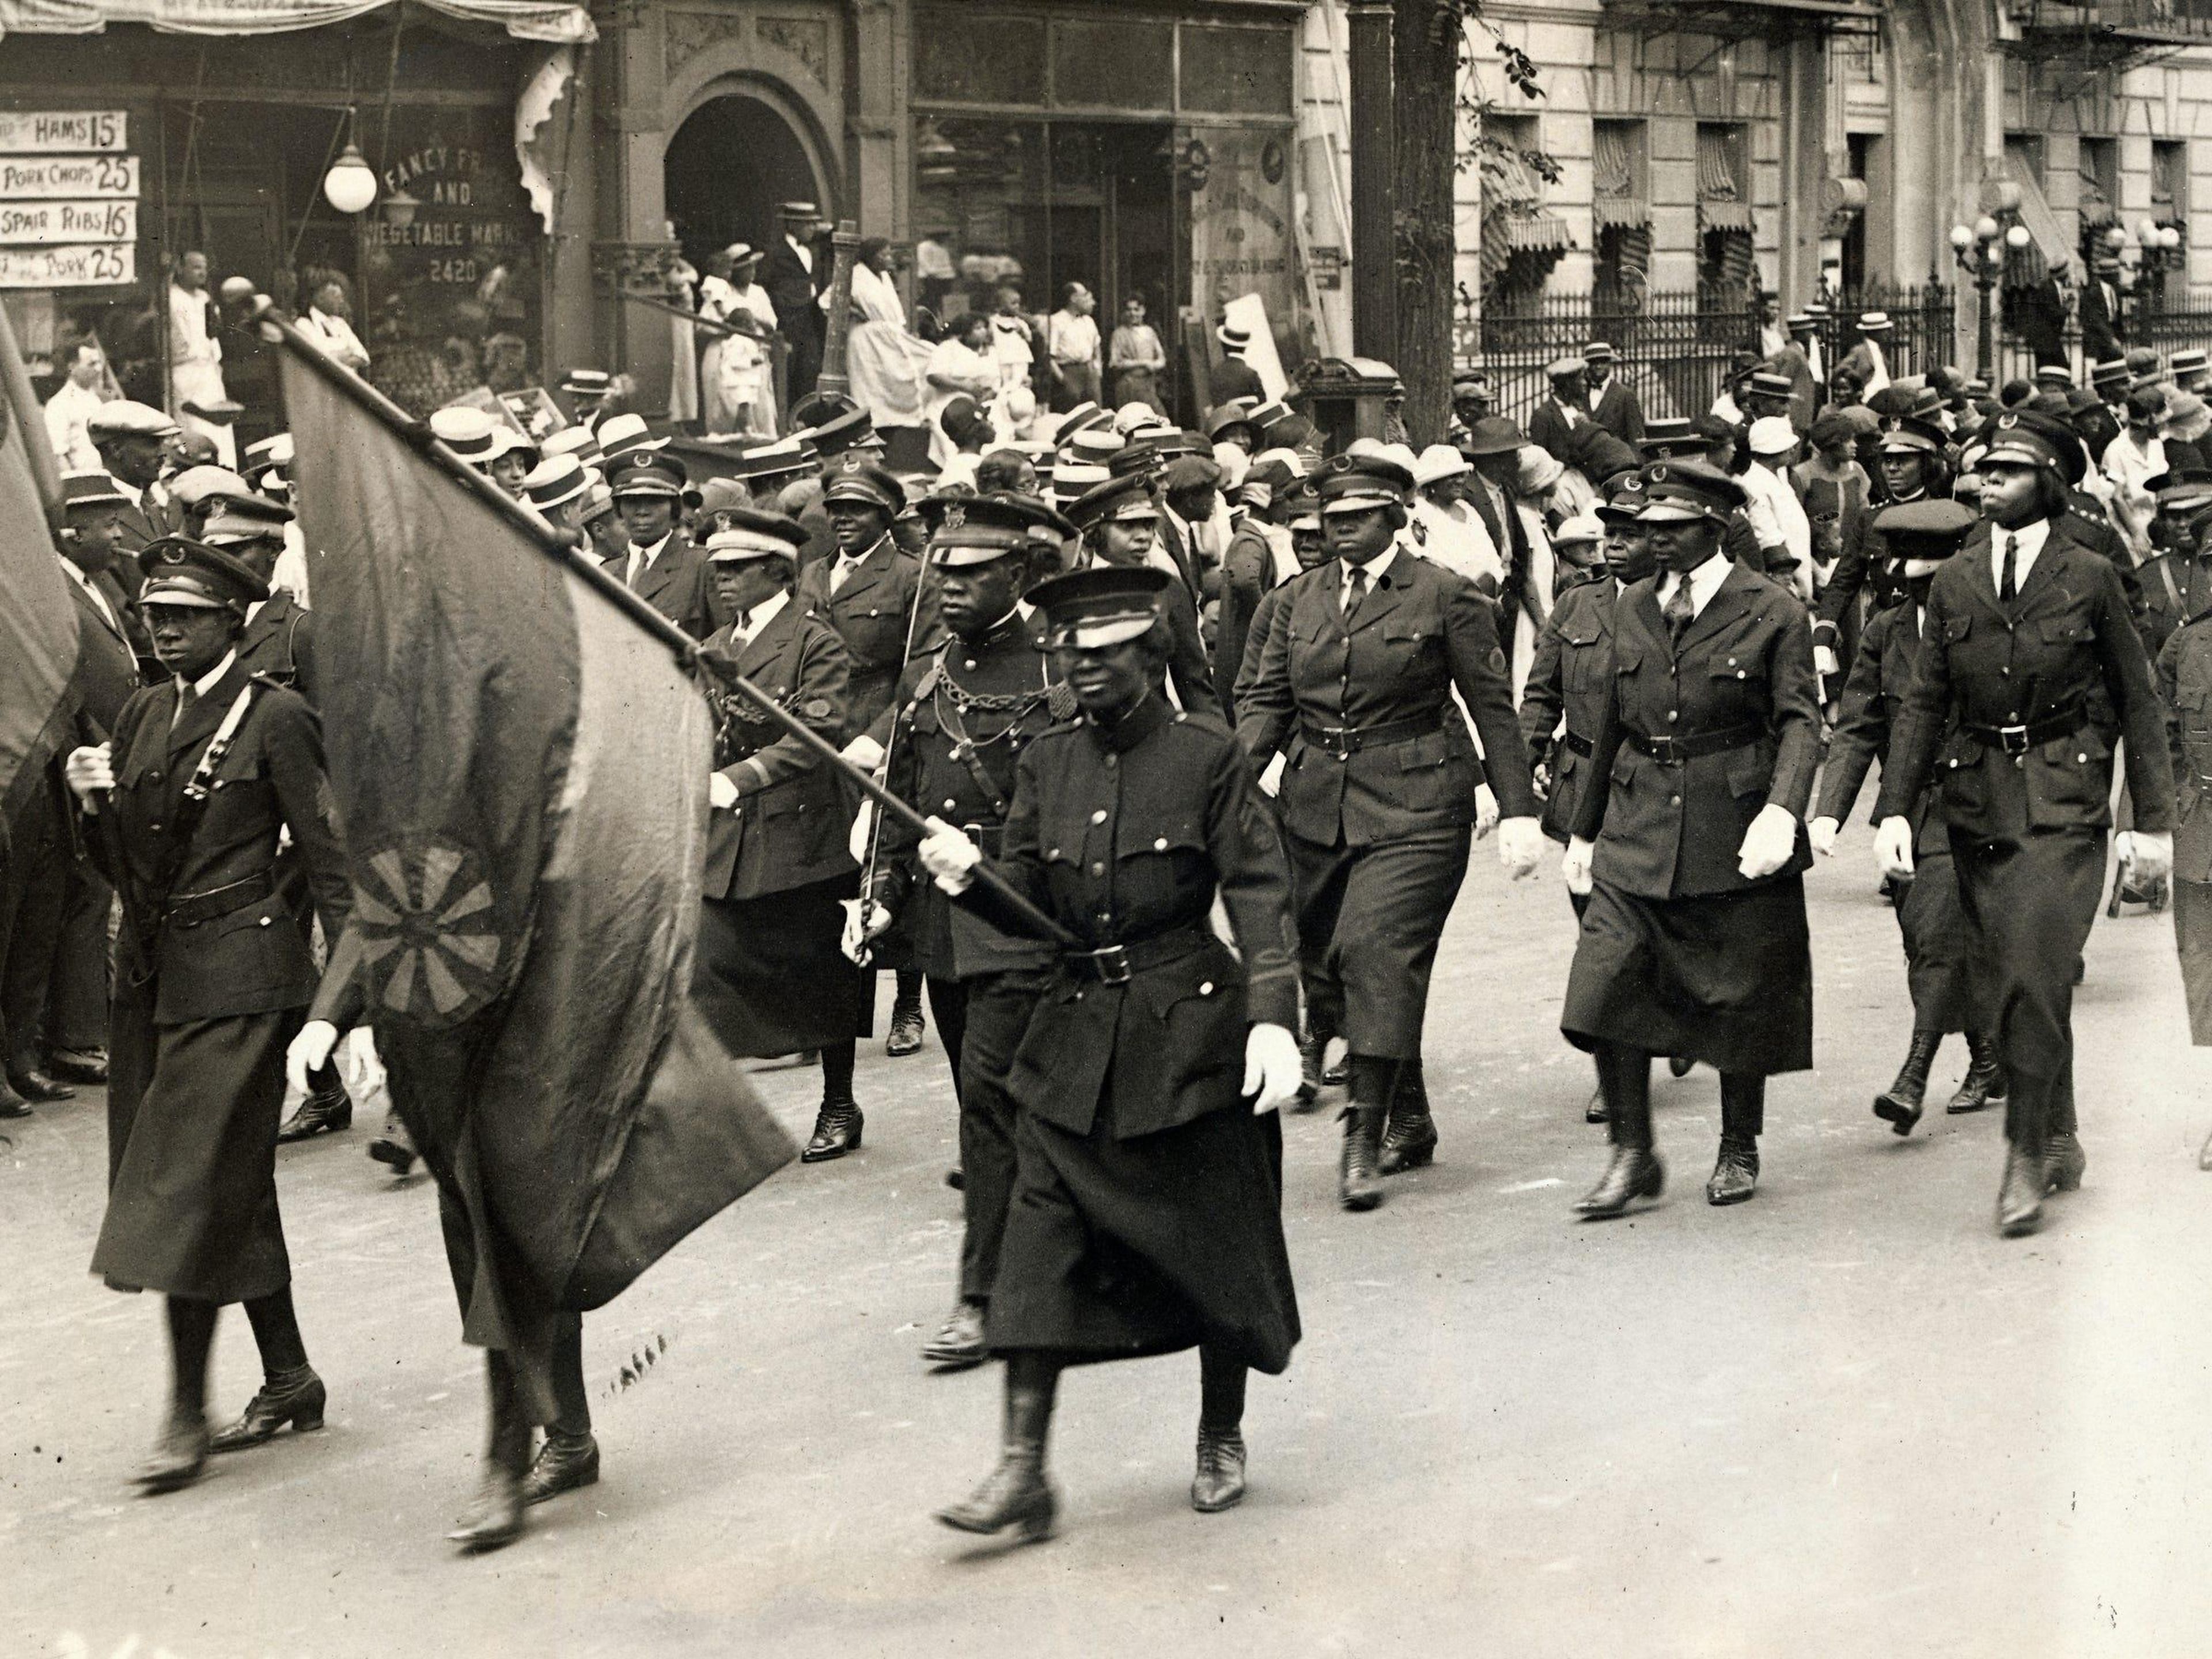 Mujeres negras en uniforme asisten al mitin de Marcus Garvey en Harlem.